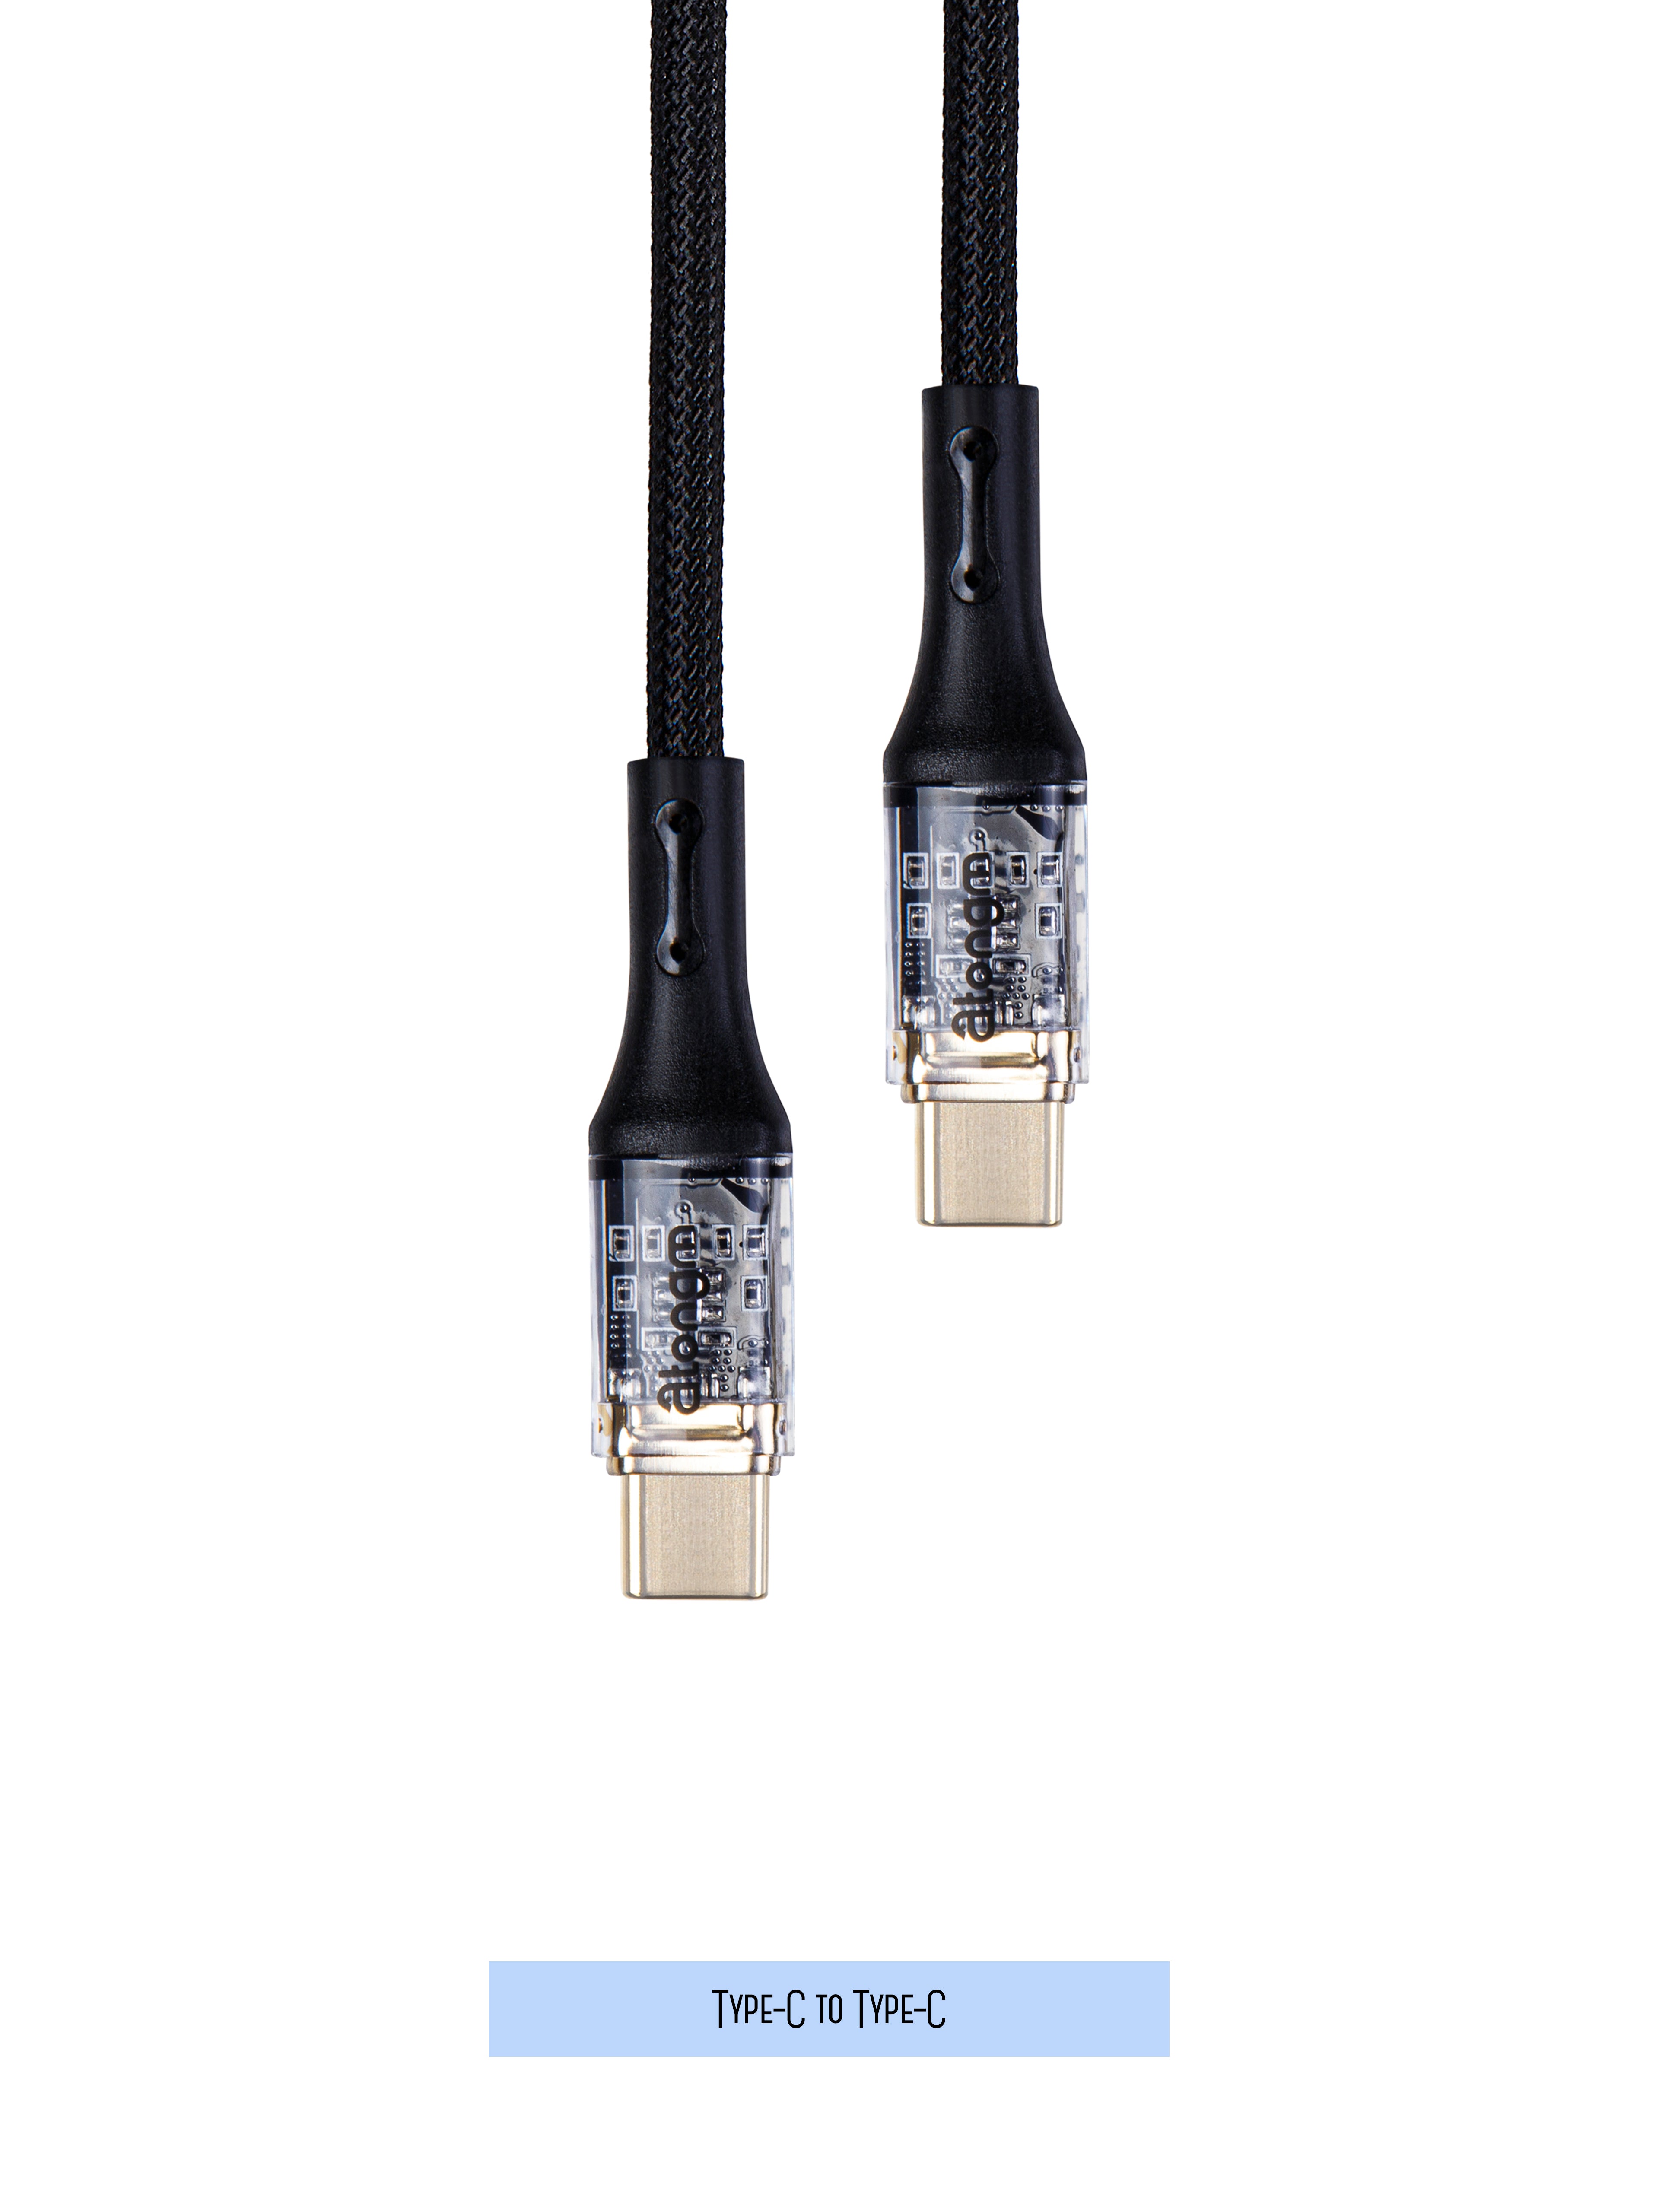 atongm type-c to type-c şəffaf kabel 9A/60W Sürətli doldurma kabeli Örgülü qırılmaz kabel (Smart Chip Texnologiyası ilə)